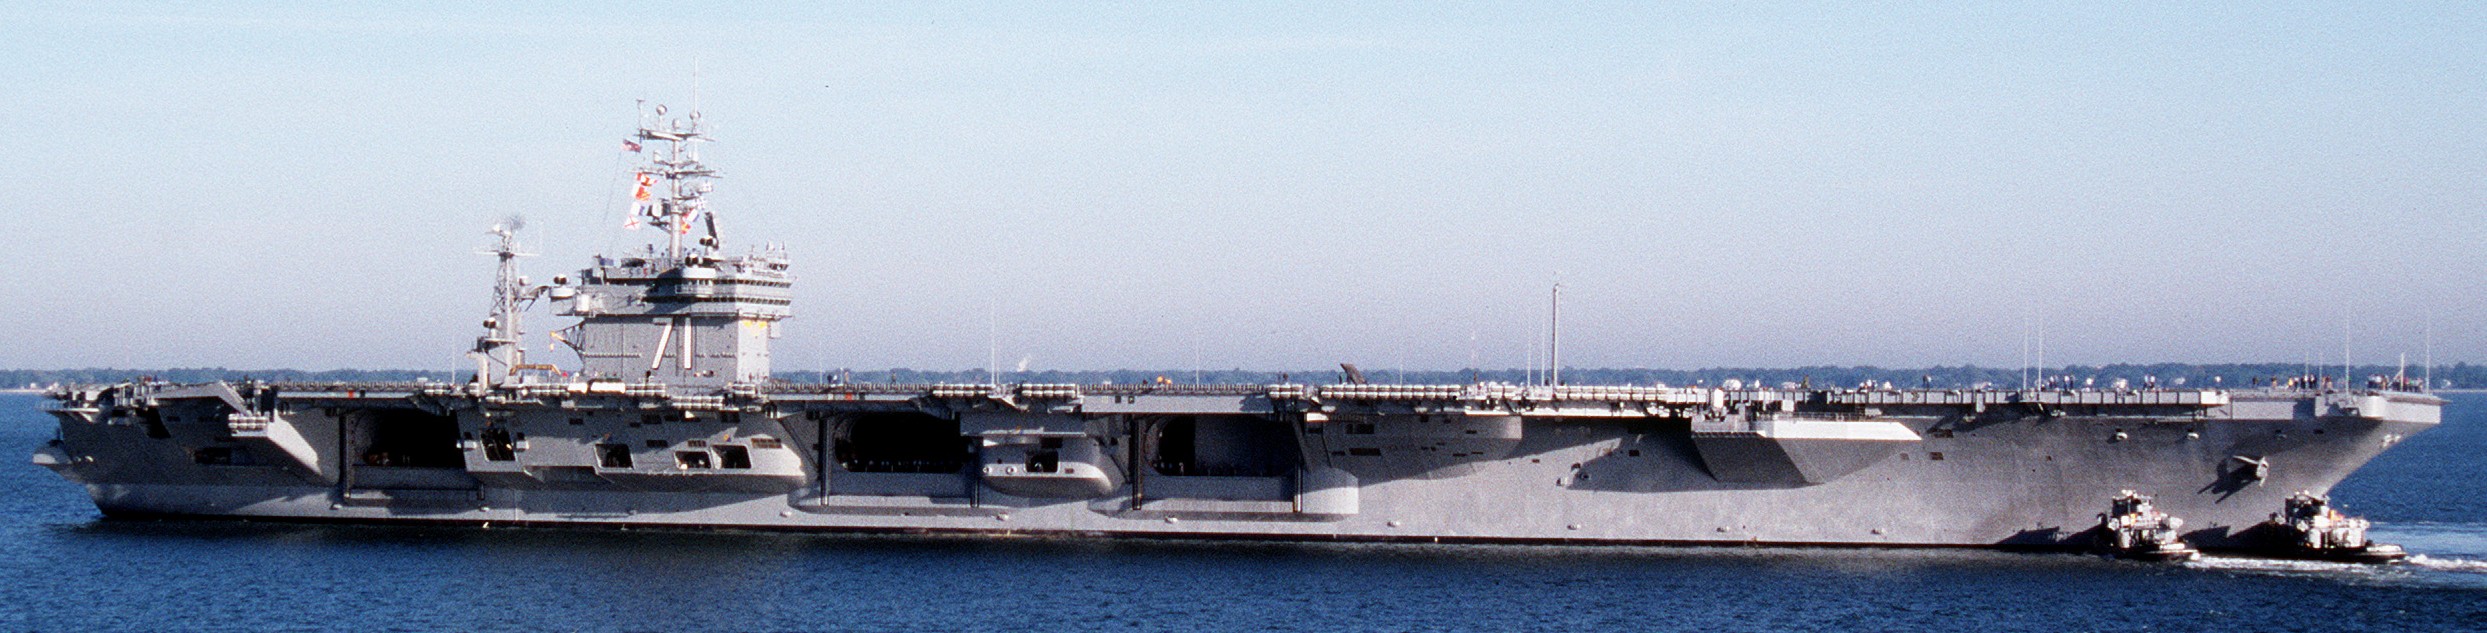 cvn-71 uss theodore roosevelt nimitz class aircraft carrier norfolk virginia 57